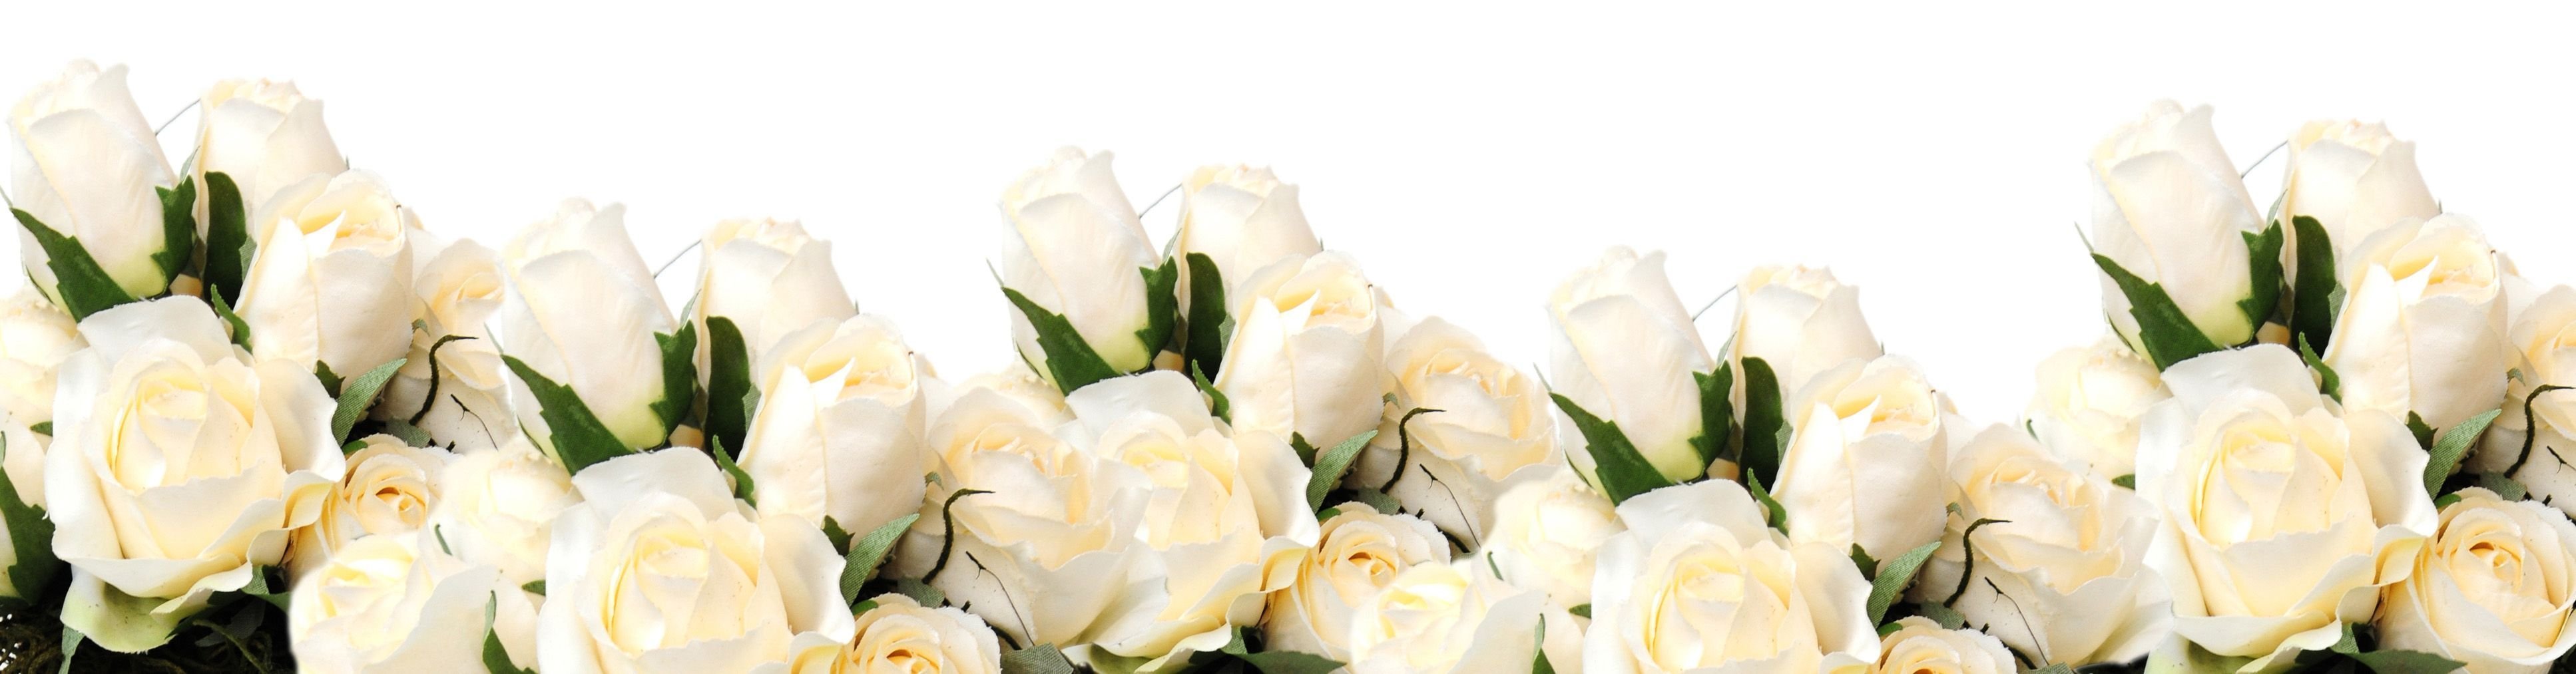 Белые и розовые розы на прозрачном фоне фото